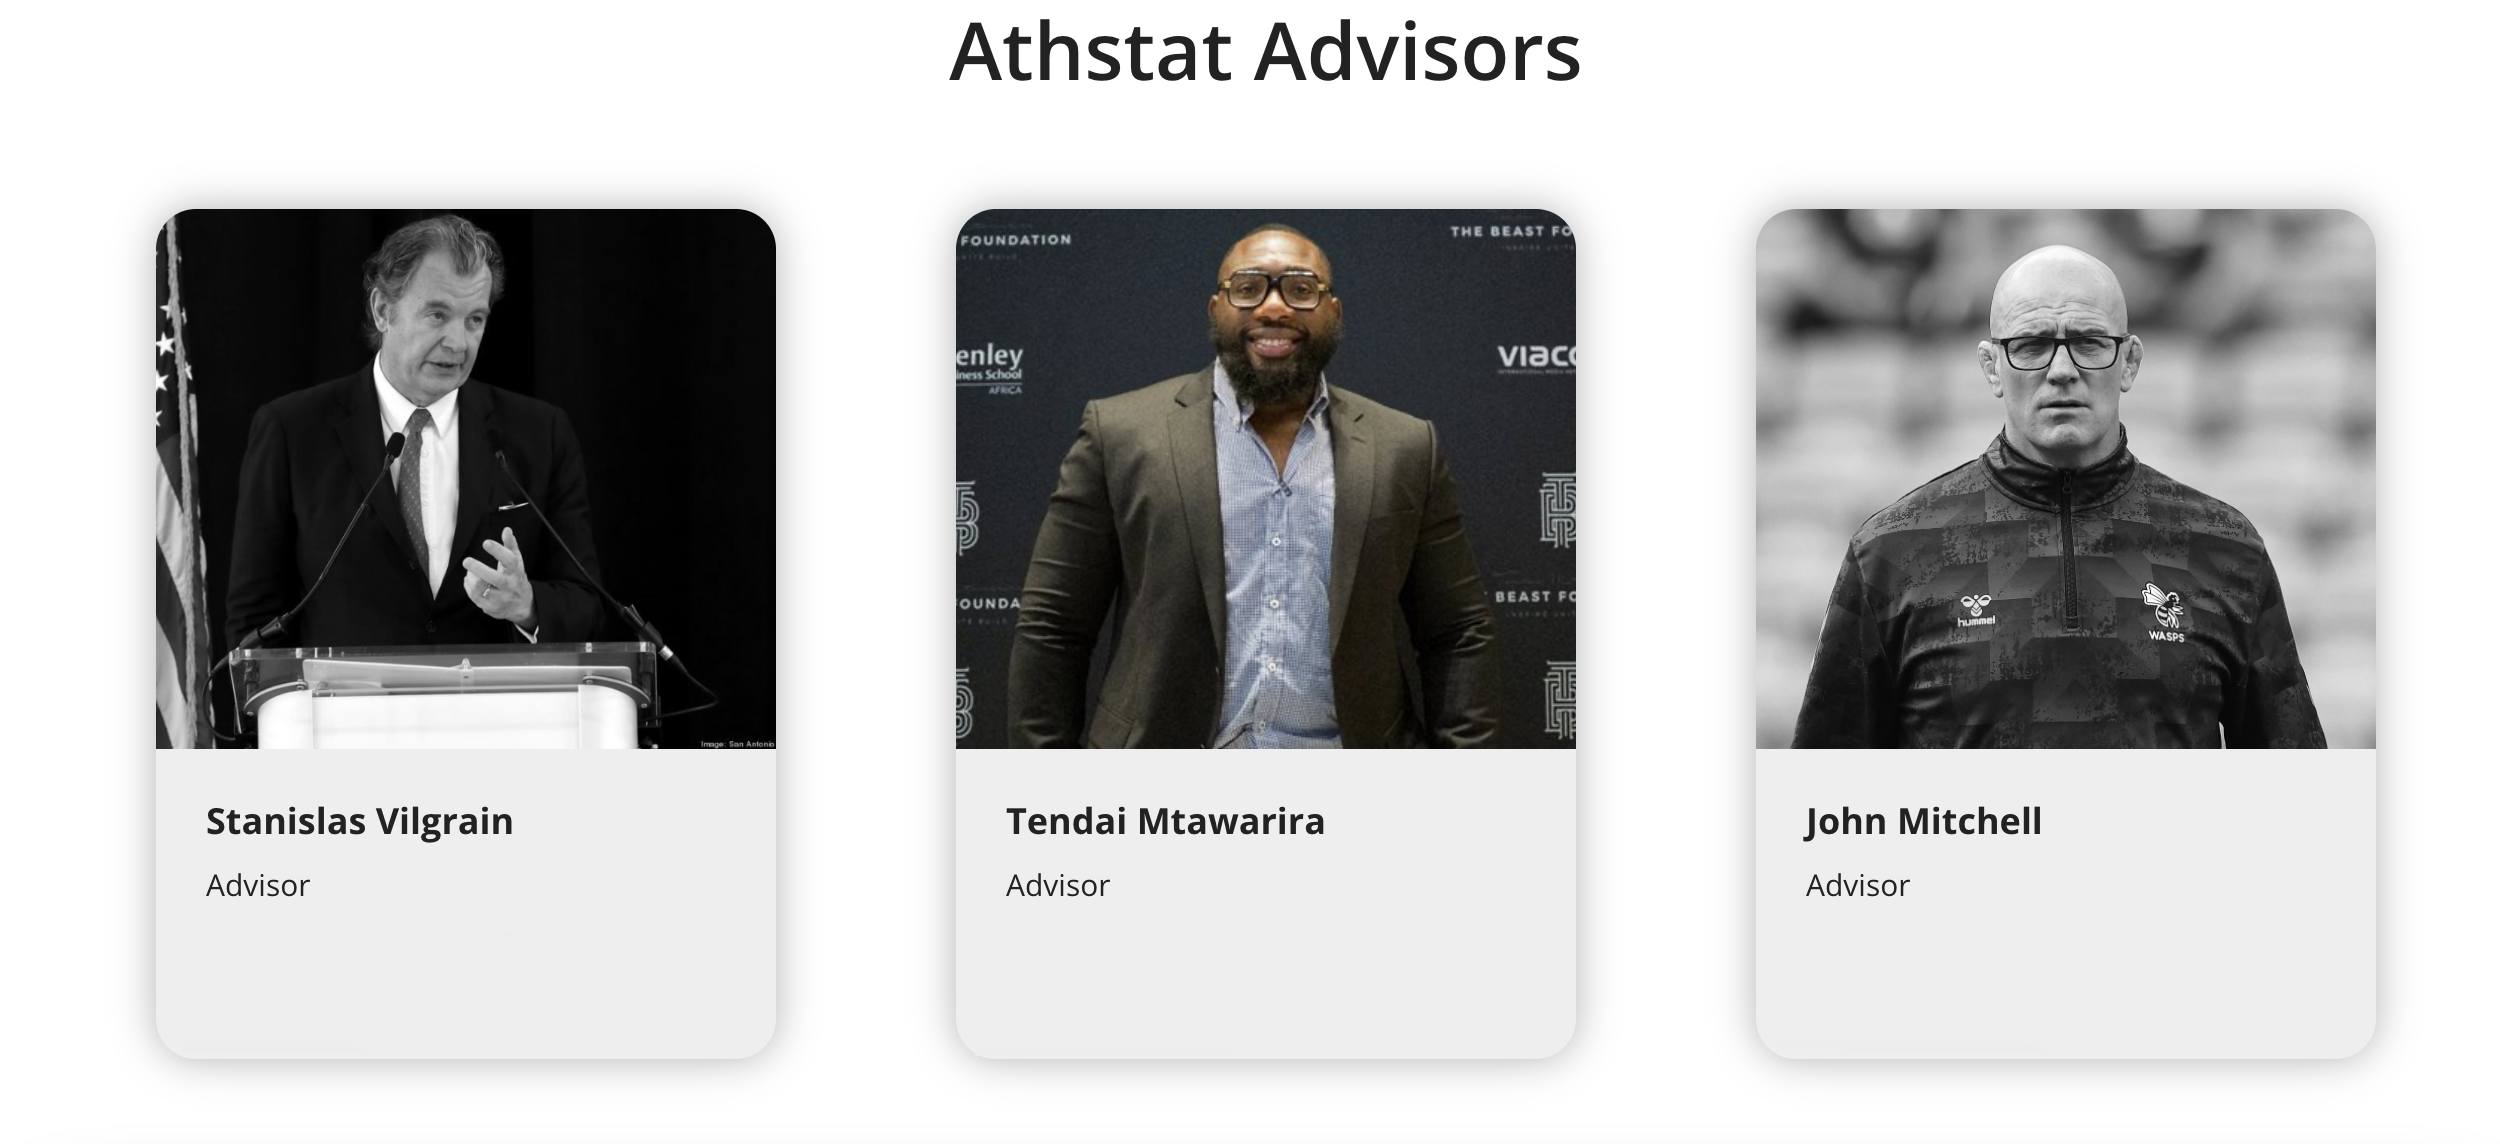 Athstat Names Company Advisors – Mtawarira, Mitchell, Vilgrain